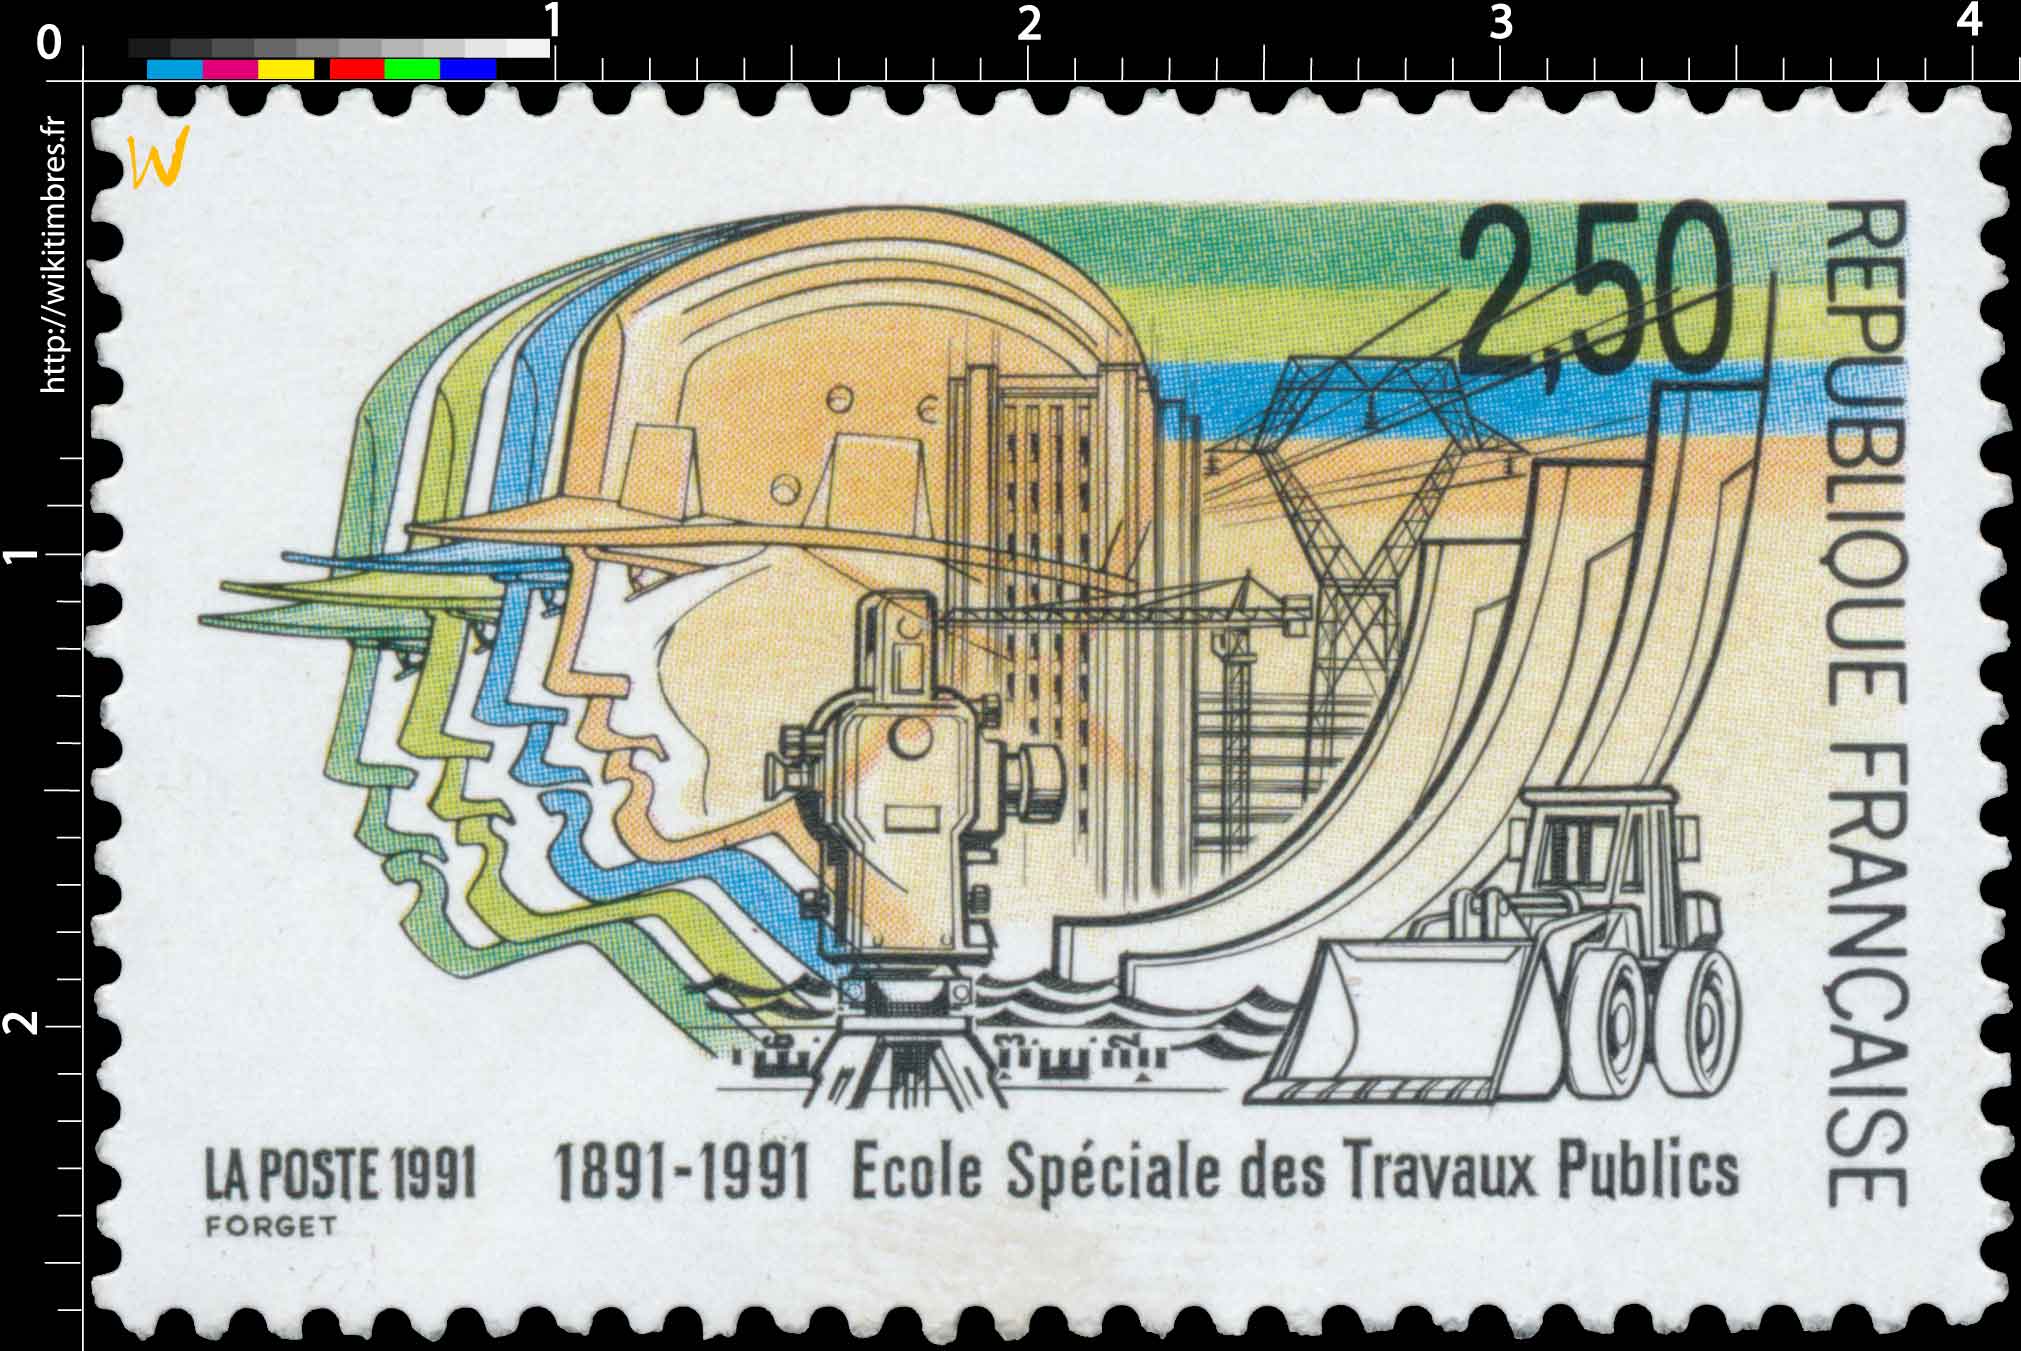 1991 École Spéciale des Travaux Publics 1891-1991